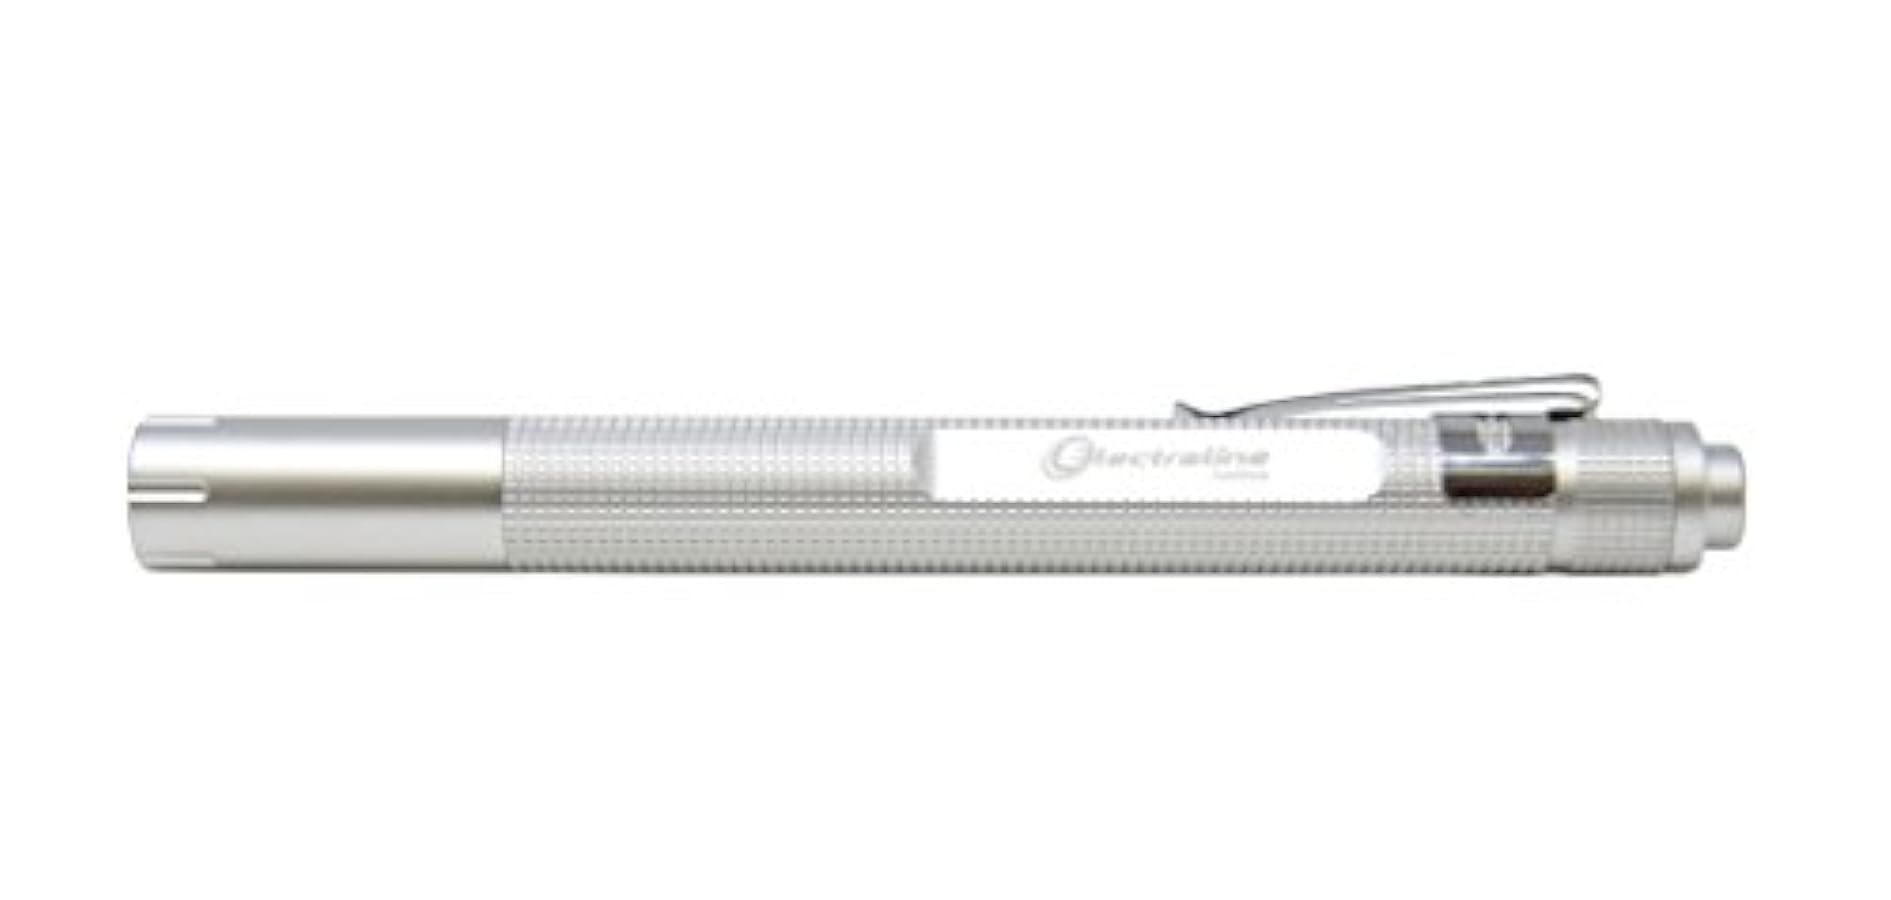 semplice Electraline 58044 Torcia Stilo LED Penlight Torcia di Ispezione uso Professionale 30 Lumen, Design di Alluminio e Ideale come Torcia da Lavoro. ben vendita